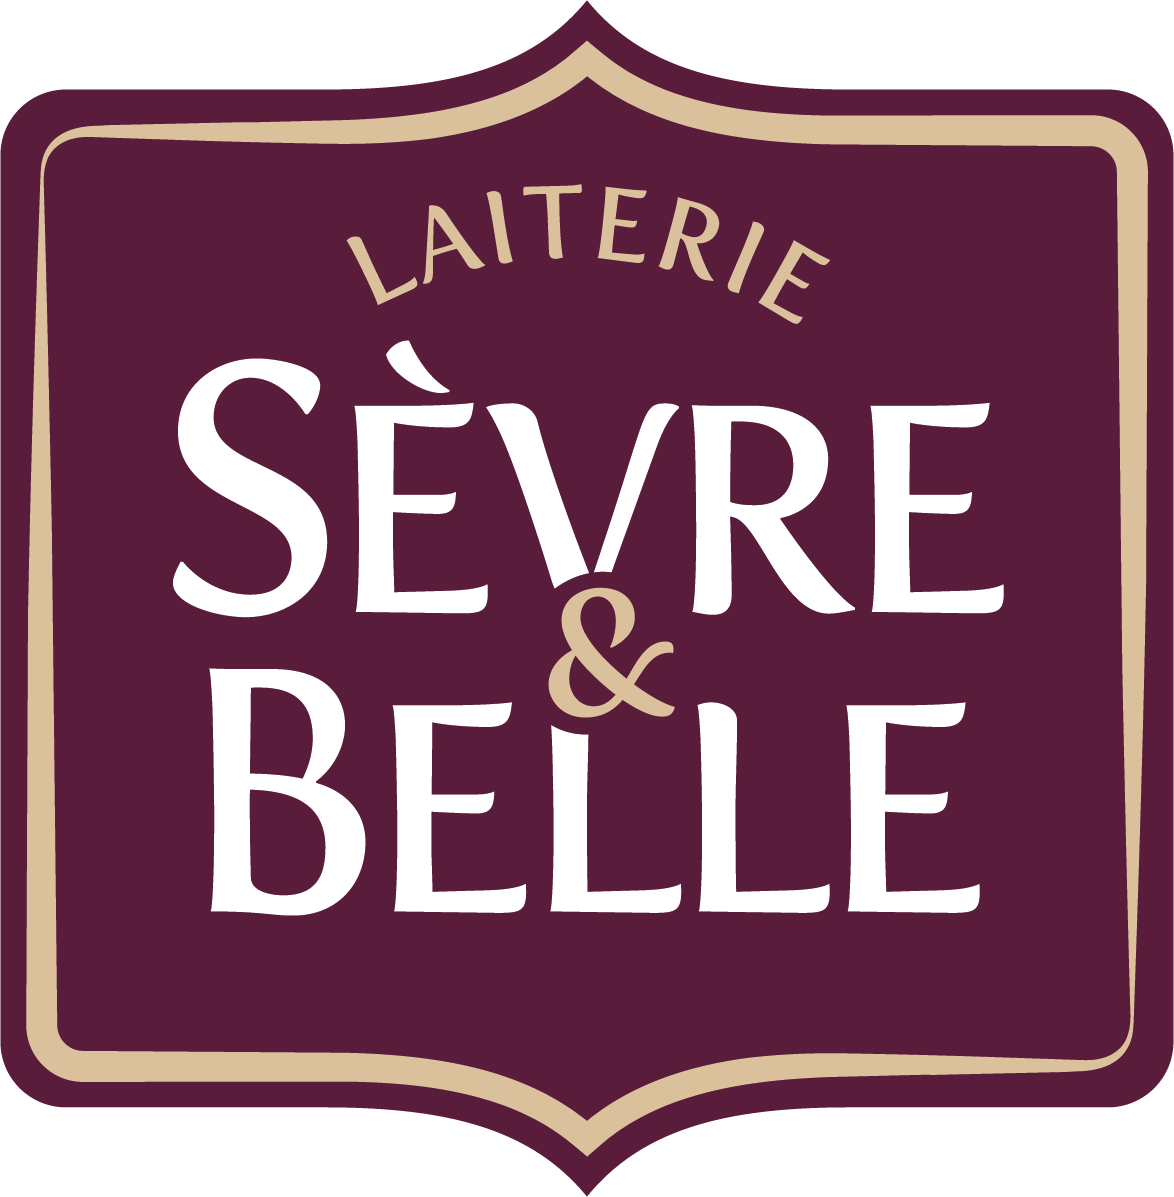 Fromages de chèvre et beurre de barratte en ligne Sèvre&Belle